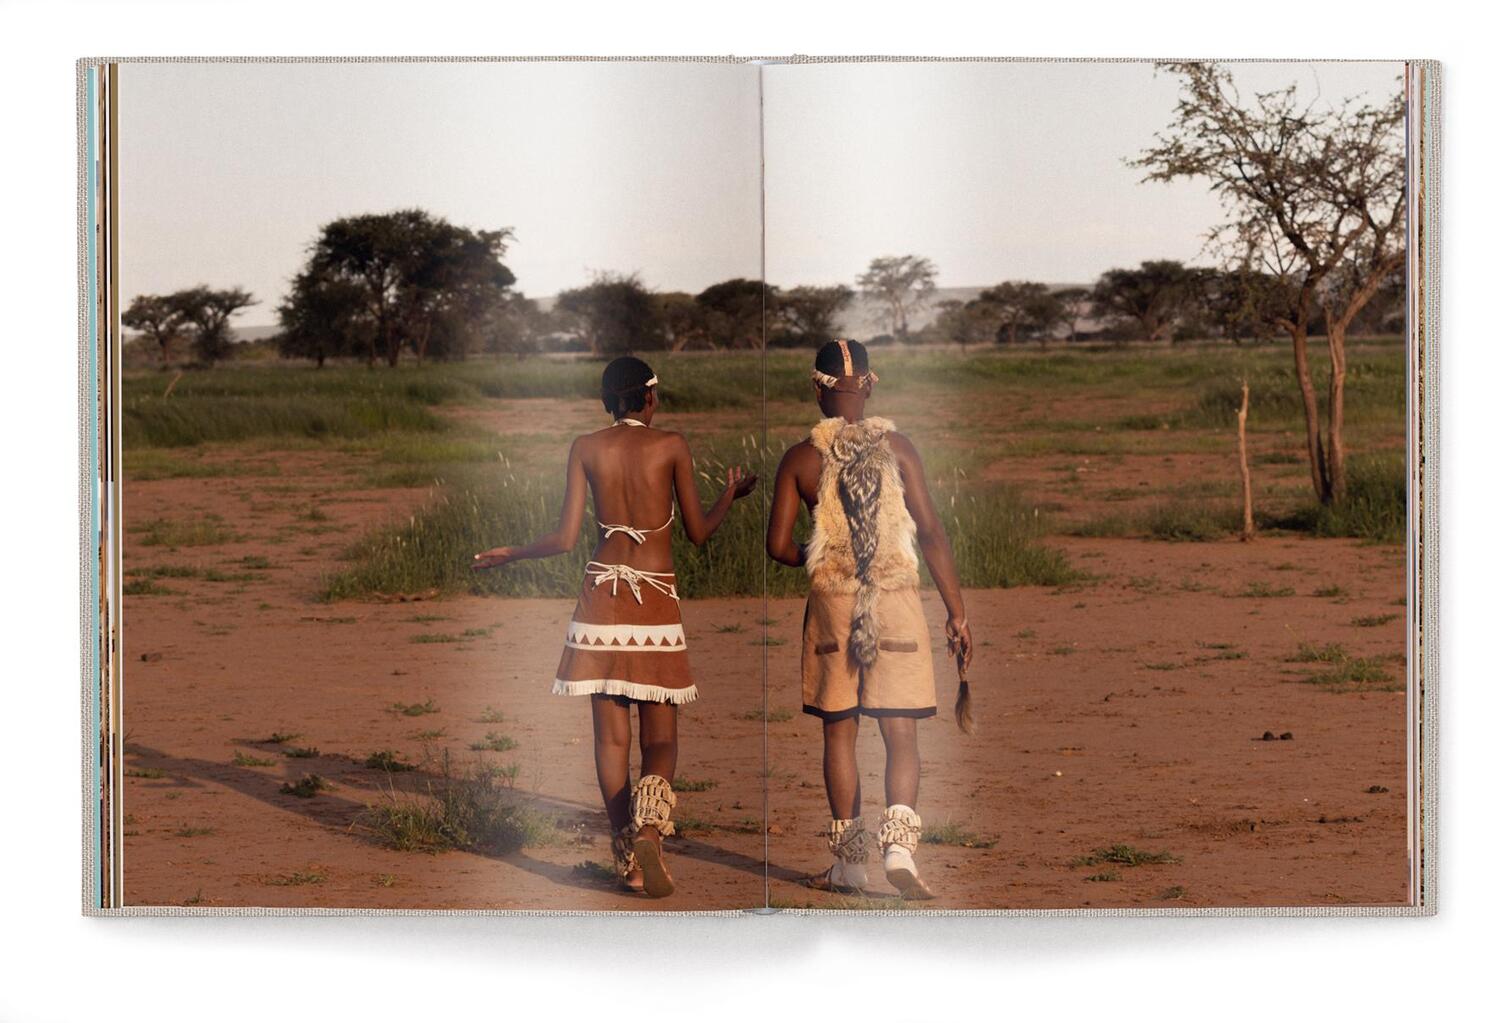 Bild: 9783961714414 | Green Namibia | Patricia Parinejad | Buch | Deutsch | 2023